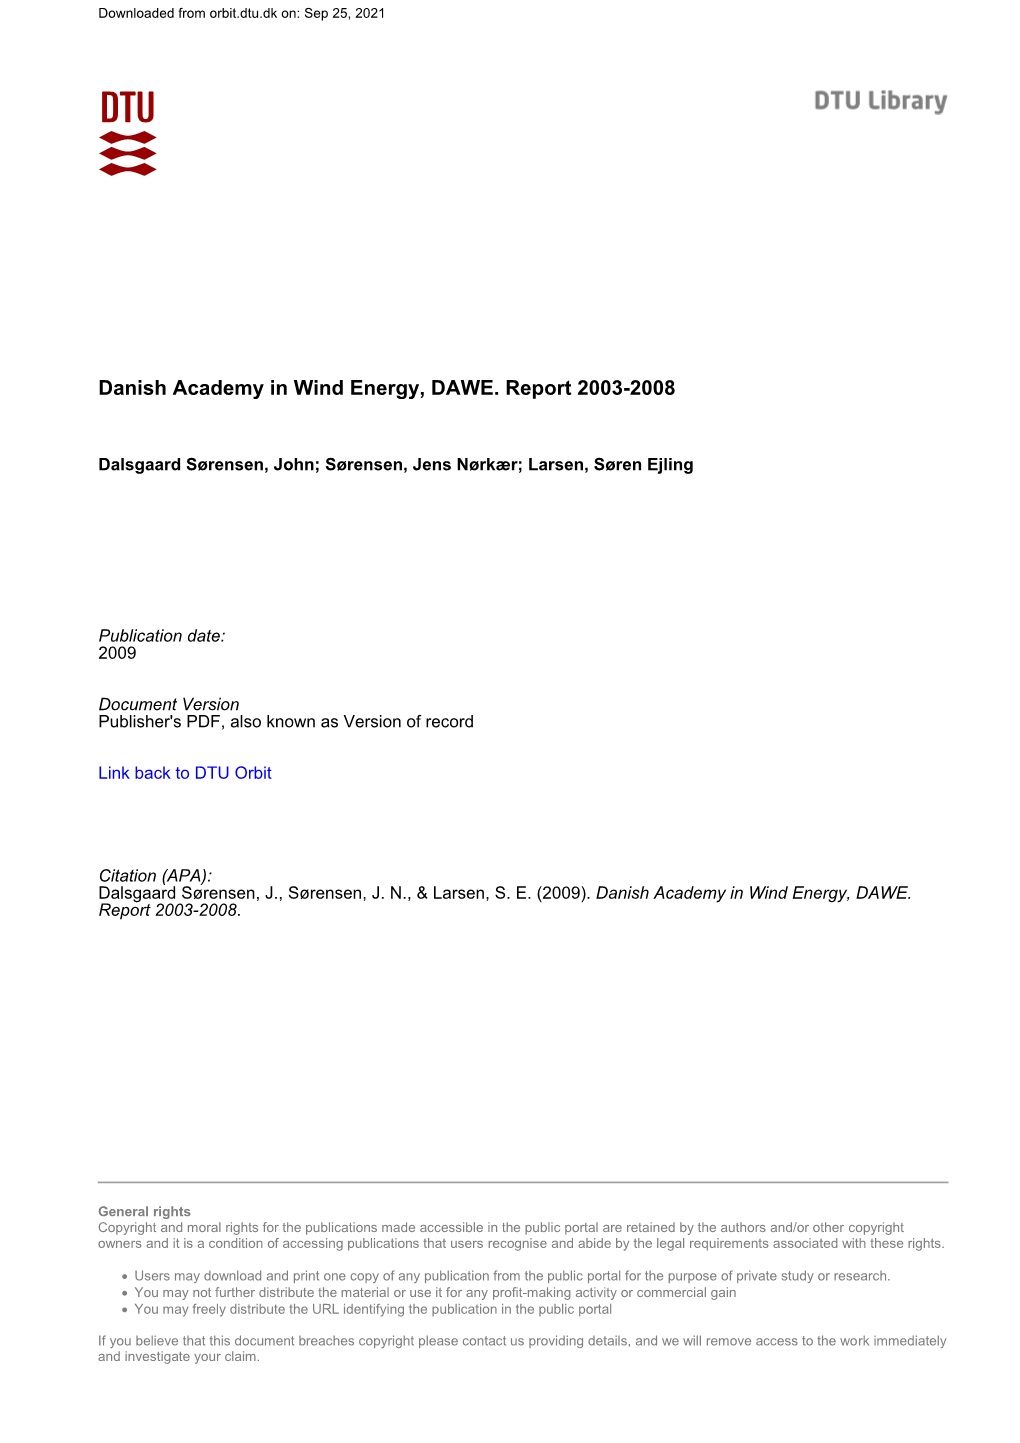 Danish Academy in Wind Energy Report 2003-2008